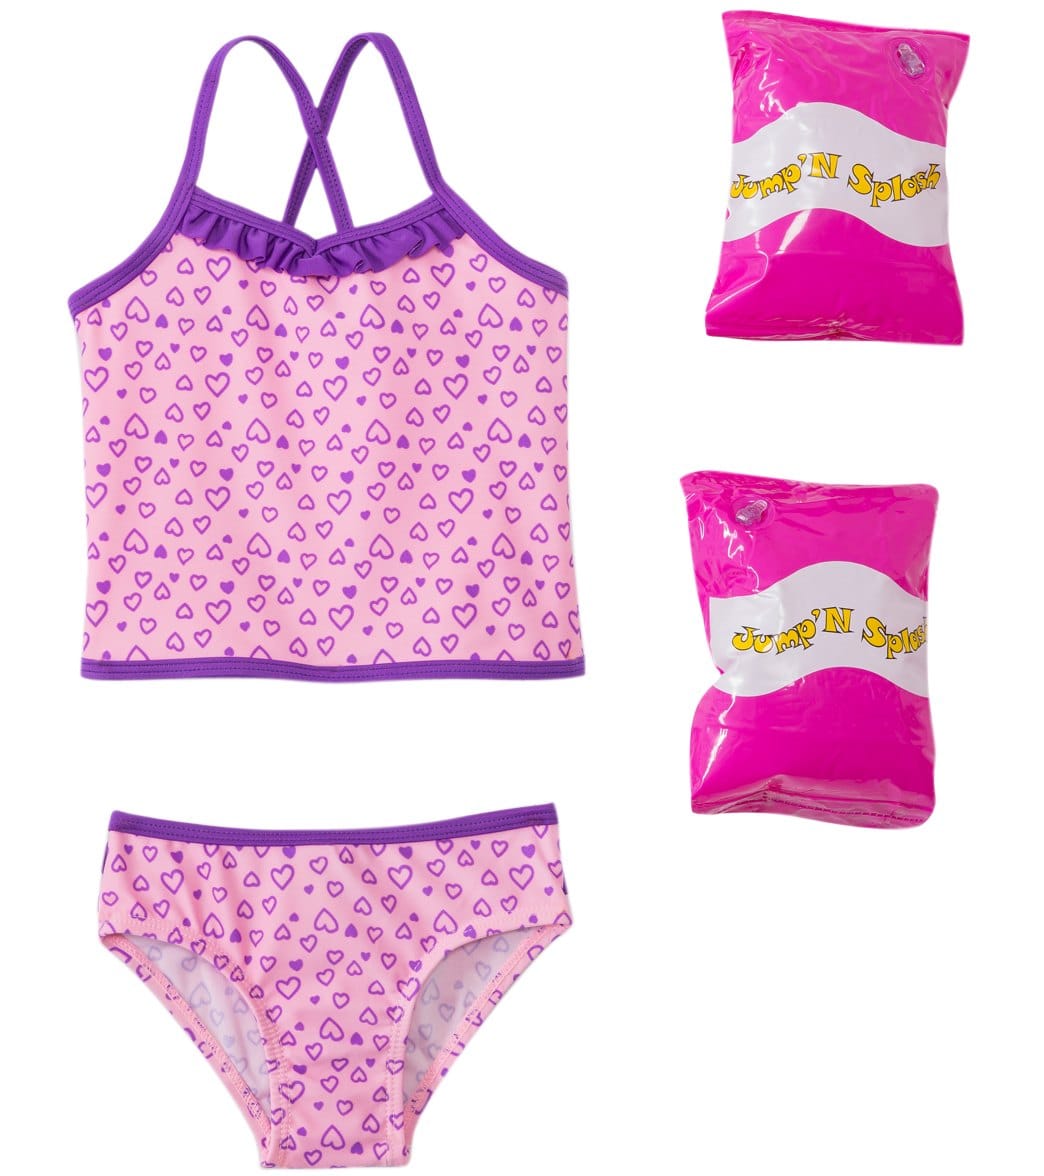 Jump N Splash Toddler Girls' Happy Heart Two-Piece Swimsuit W/ Free Floaties 2T-4T - Multi 2T - Swimoutlet.com